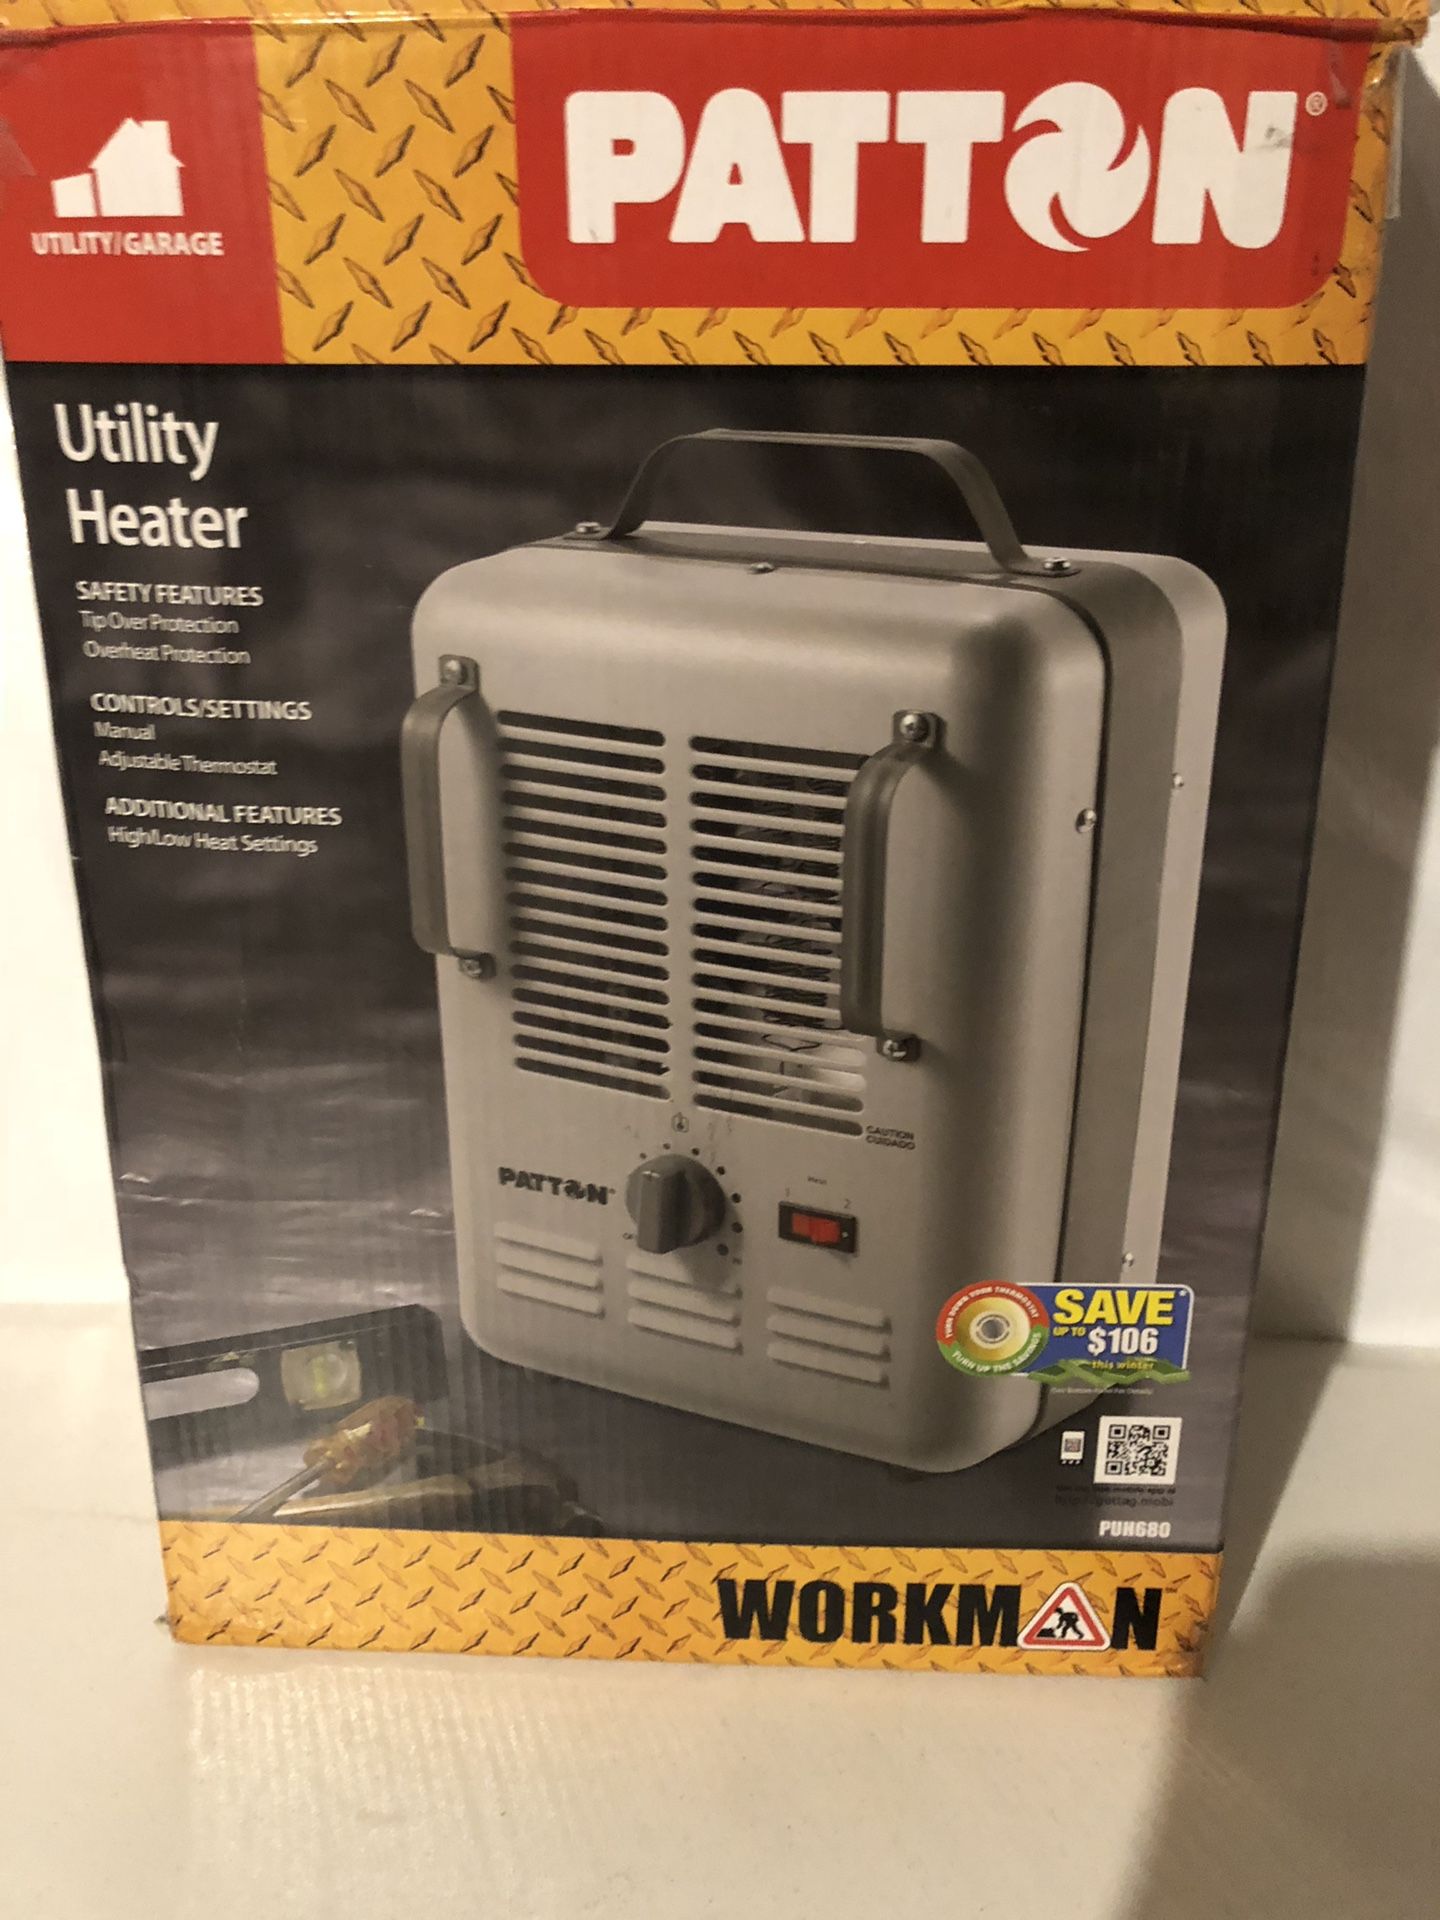 Work heater